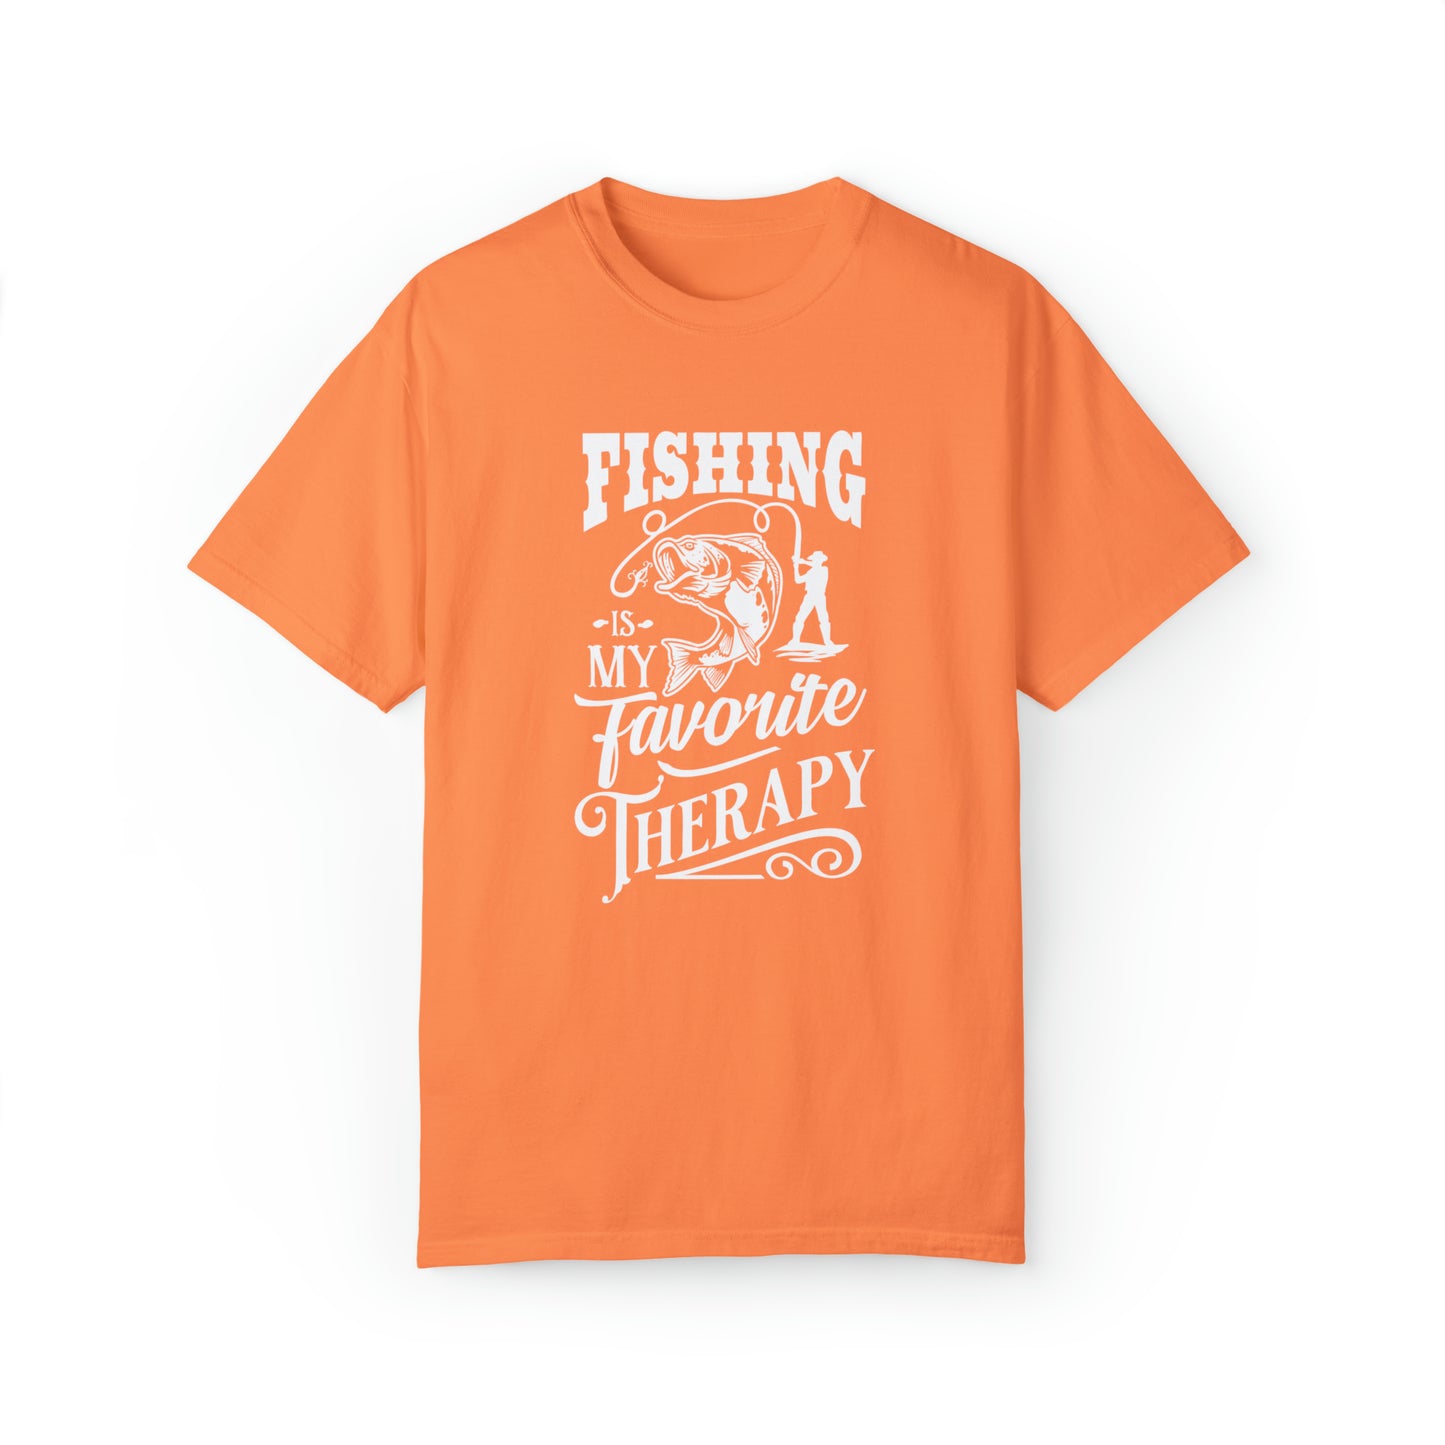 リール イン セレニティ: 釣りをテーマにしたセラピー T シャツ